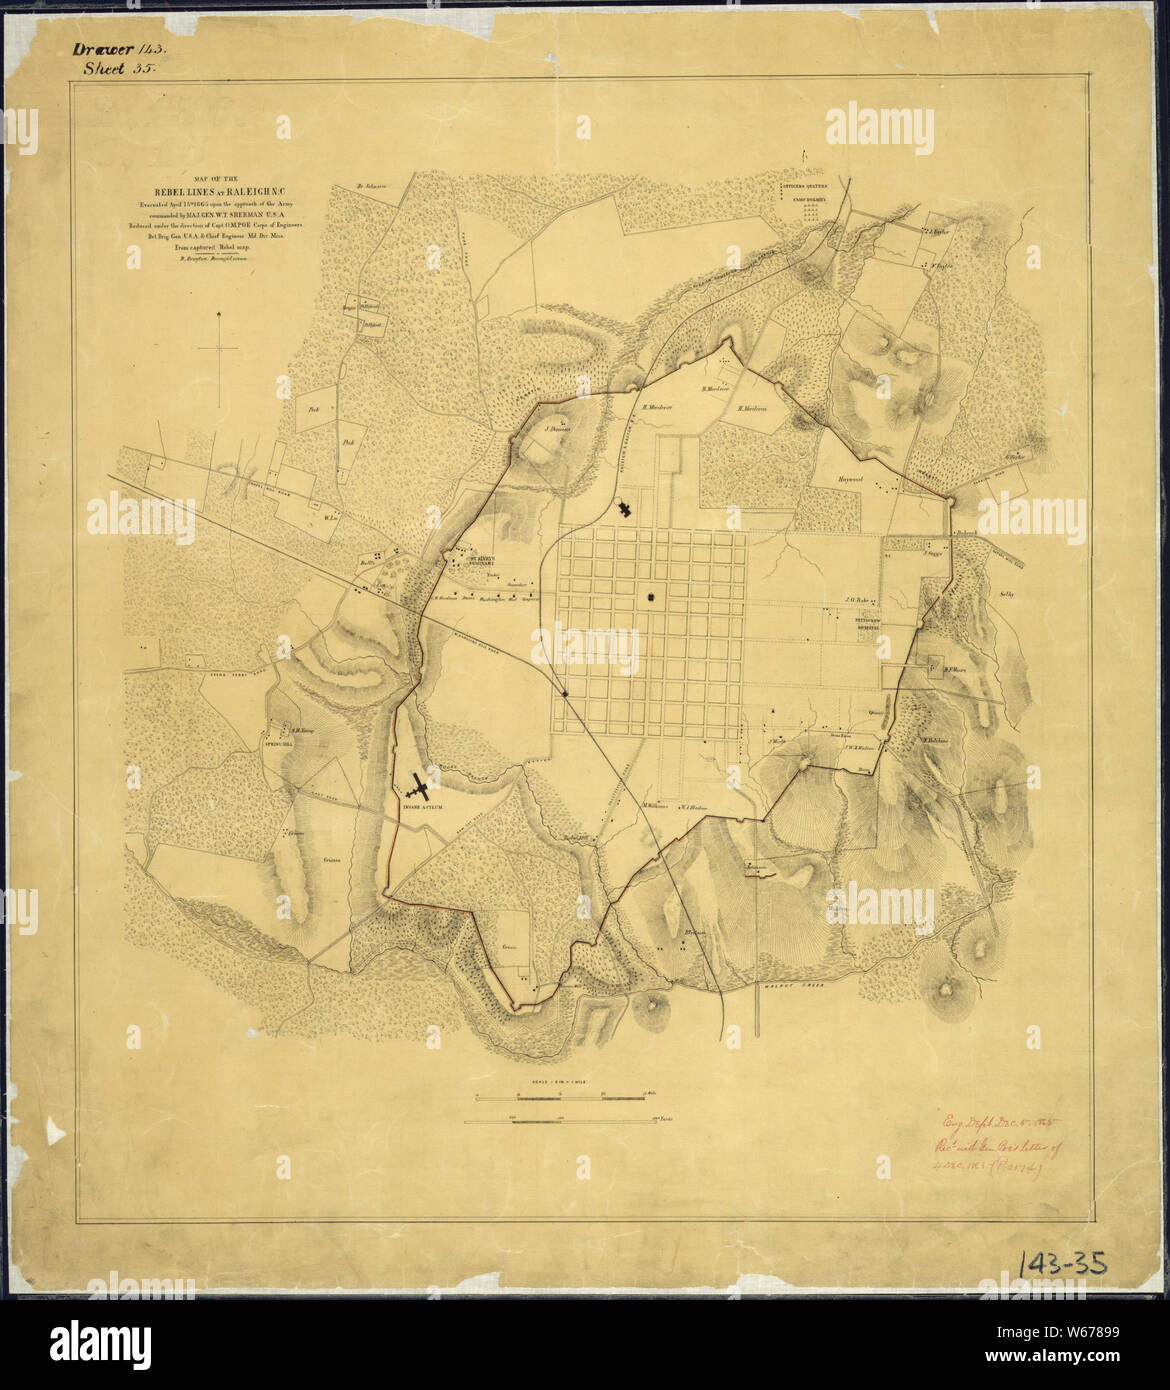 Mappa delle linee dei ribelli a Raleigh, North Carolina, evacuato Aprile 13th, 1865, sull'approccio dell'esercito comandato dal magg. Gen. W. T. Sherman, U.S.A. Ridotto sotto la direzione di Capt. O. M. Poe, Corpo degli Ingegneri, Bvt. Brig. Gen., U.S.A. & Chief Engineer, Mil. Div. Kaštela Da ribelli catturati mappa. B. Drayton, disegnatore. Foto Stock